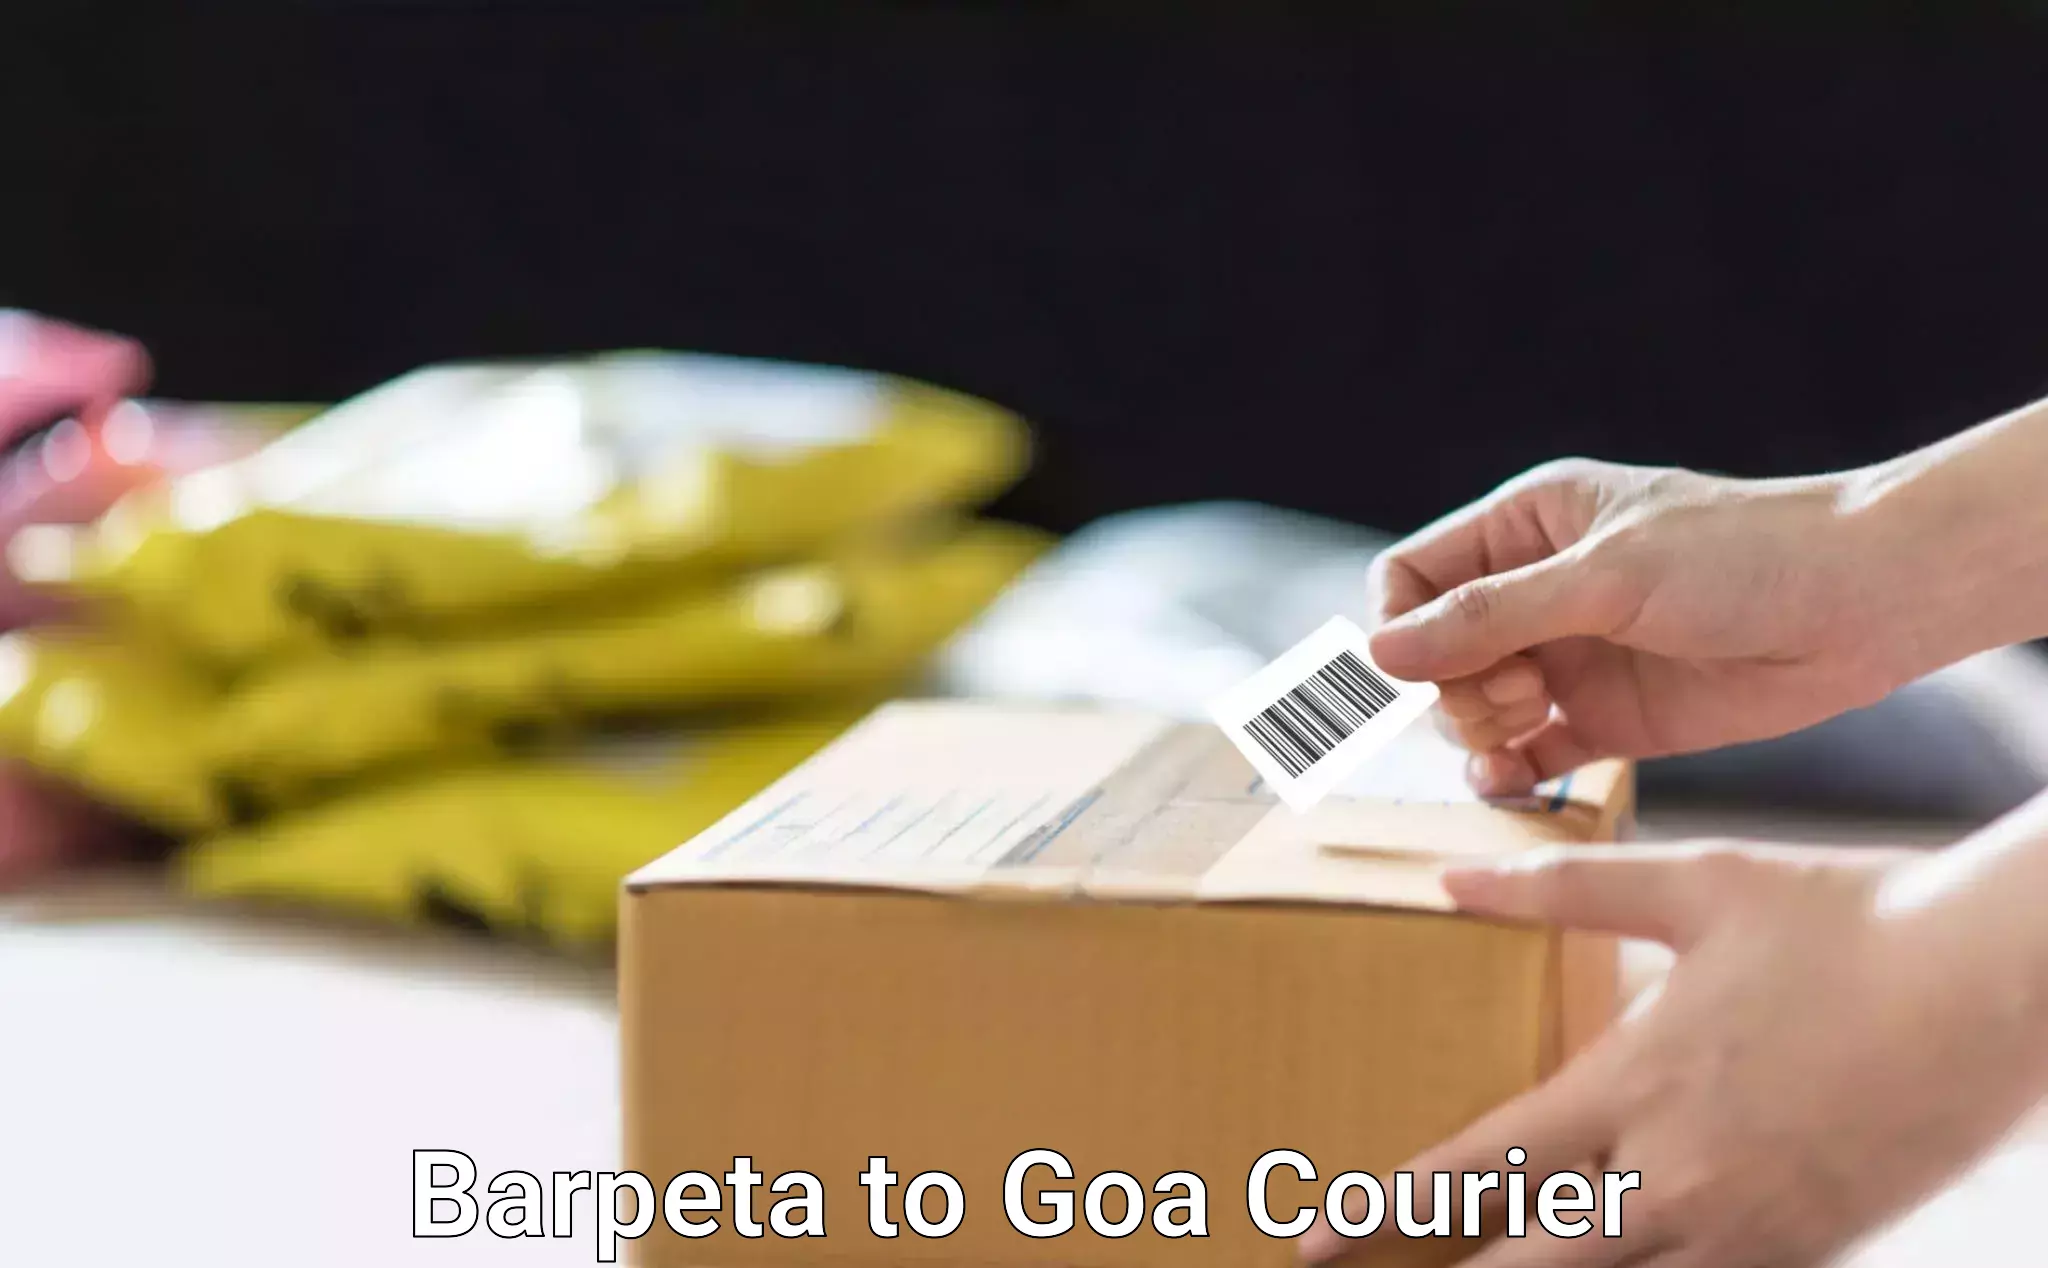 Courier service comparison Barpeta to Panaji